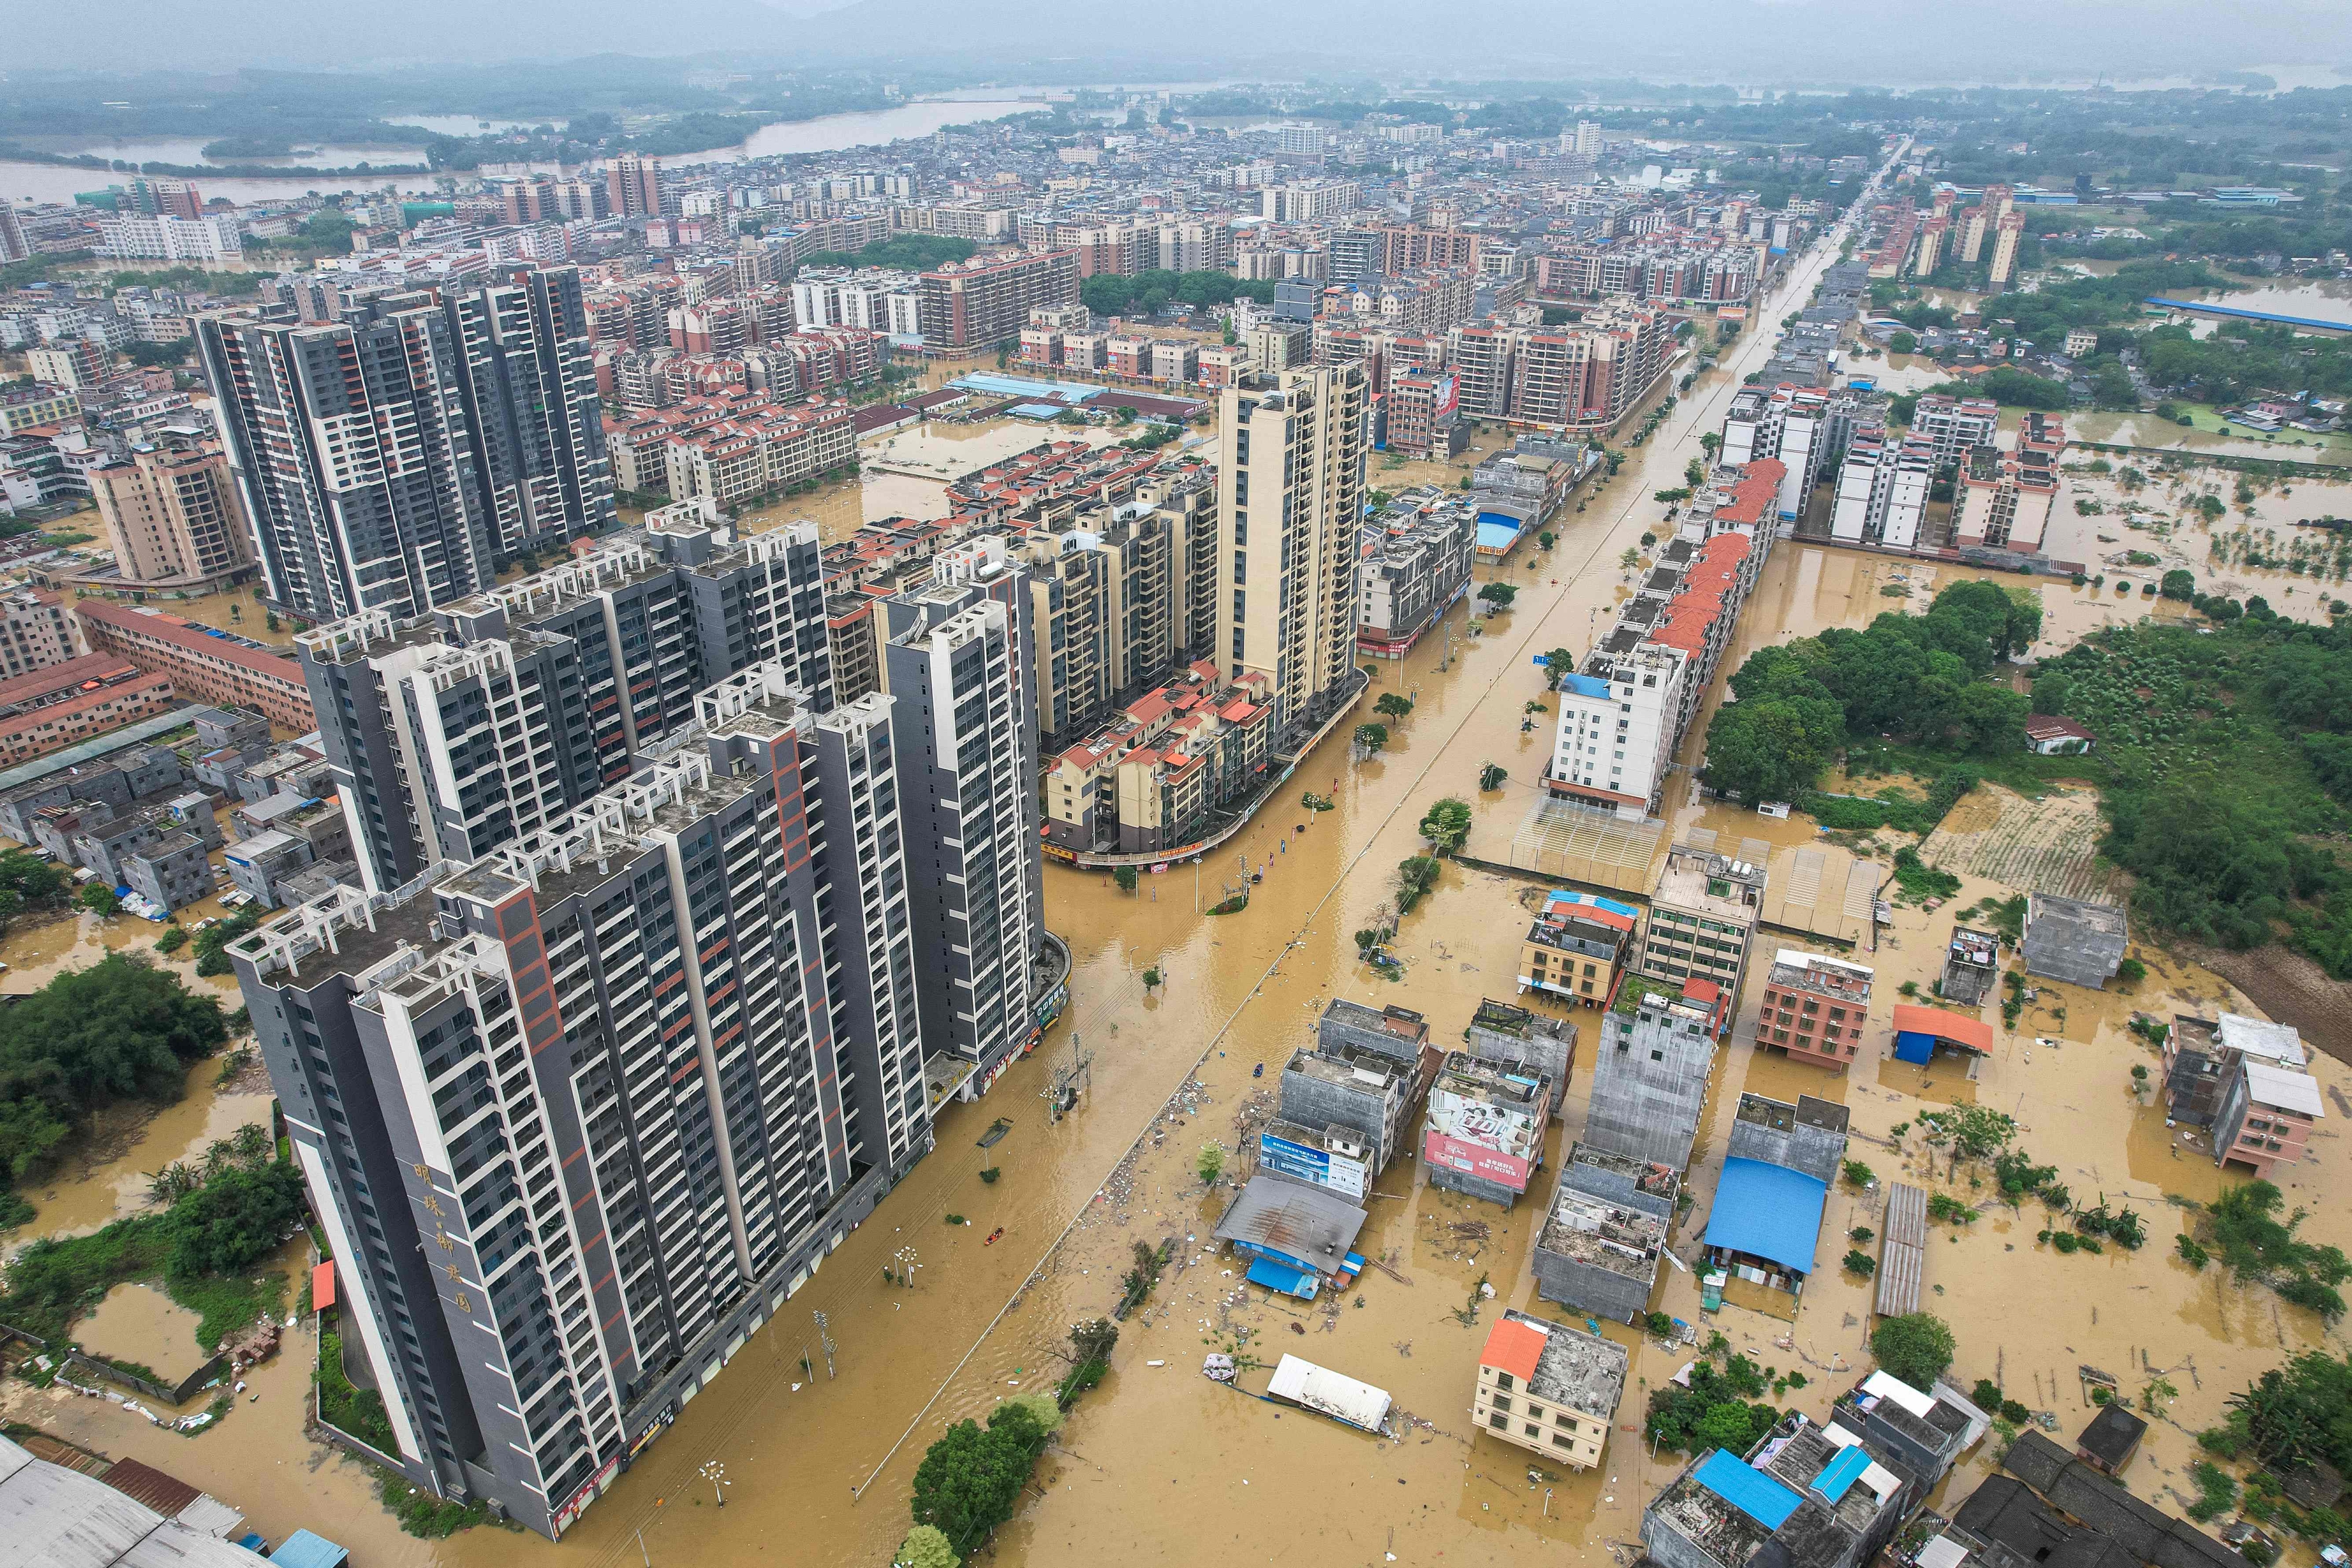 중국 남부 광둥성 칭위안에 수일째 폭우가 계속되면서 22일 현재 거리 전역이 흙탕물로 침수돼 있다. 중국 남부지방에 폭우가 집중되면서 칭위안 등에는 국지적으로 300~488㎜의 비가 쏟아졌고 중국 기상당국은 폭우가 오는 25일까지 이어질 것이라고 예보했다. 광둥성 당국은 폭우로 이곳에서만 사망자 4명이 발생했고 10명이 실종 상태라고 밝혔다. 칭위안 AFP 연합뉴스